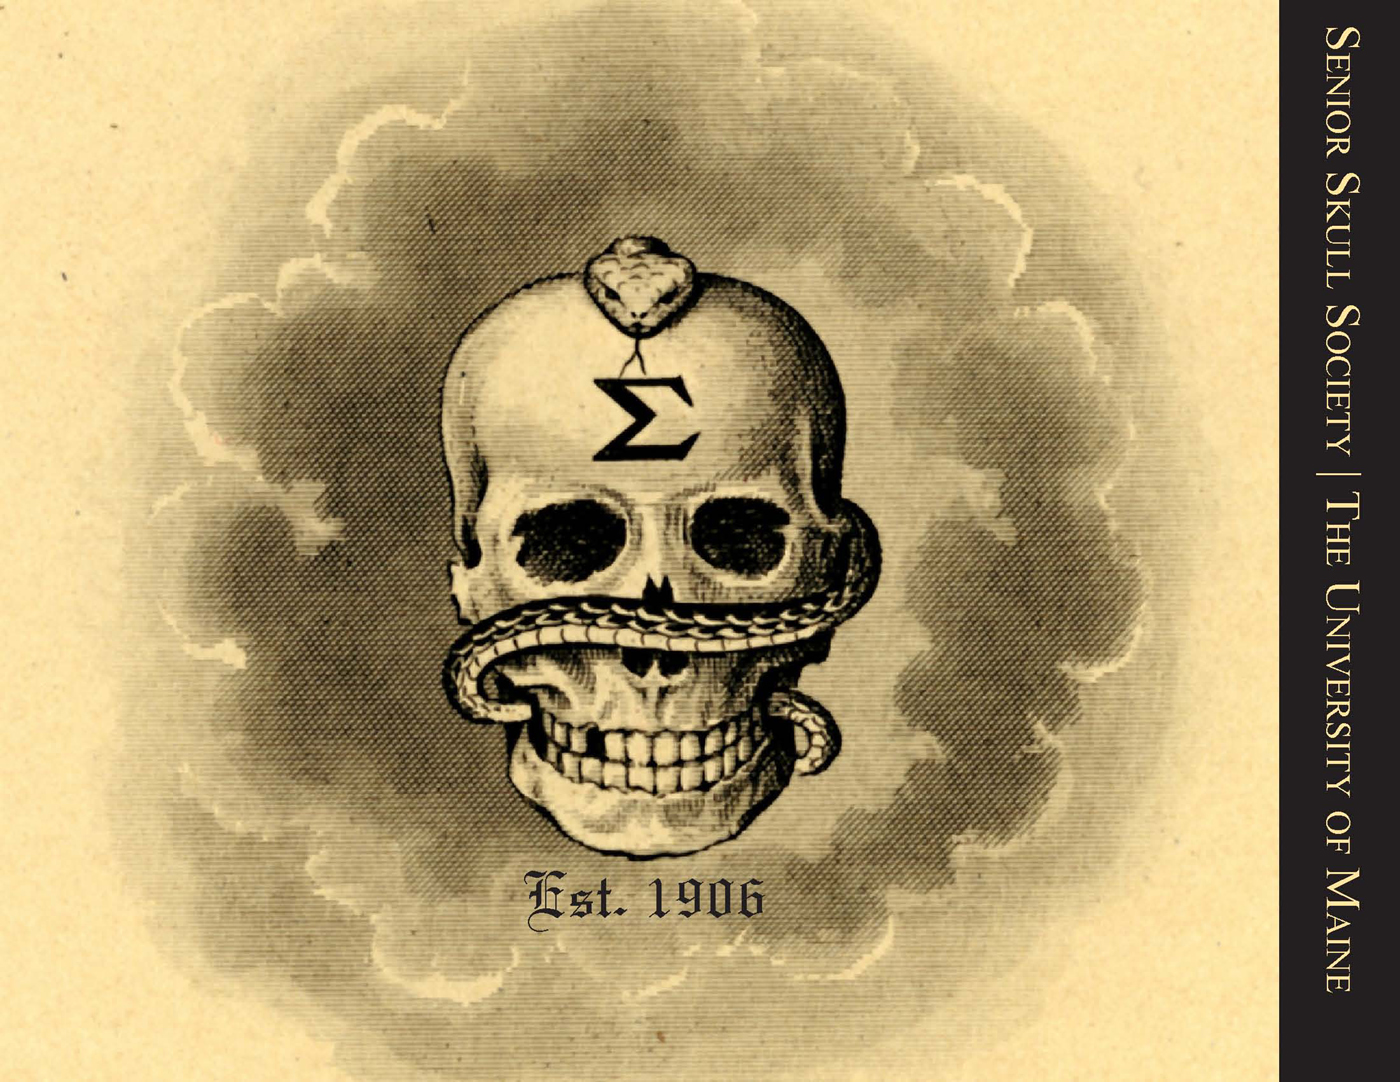 Home Skulls Skull And Bones Society